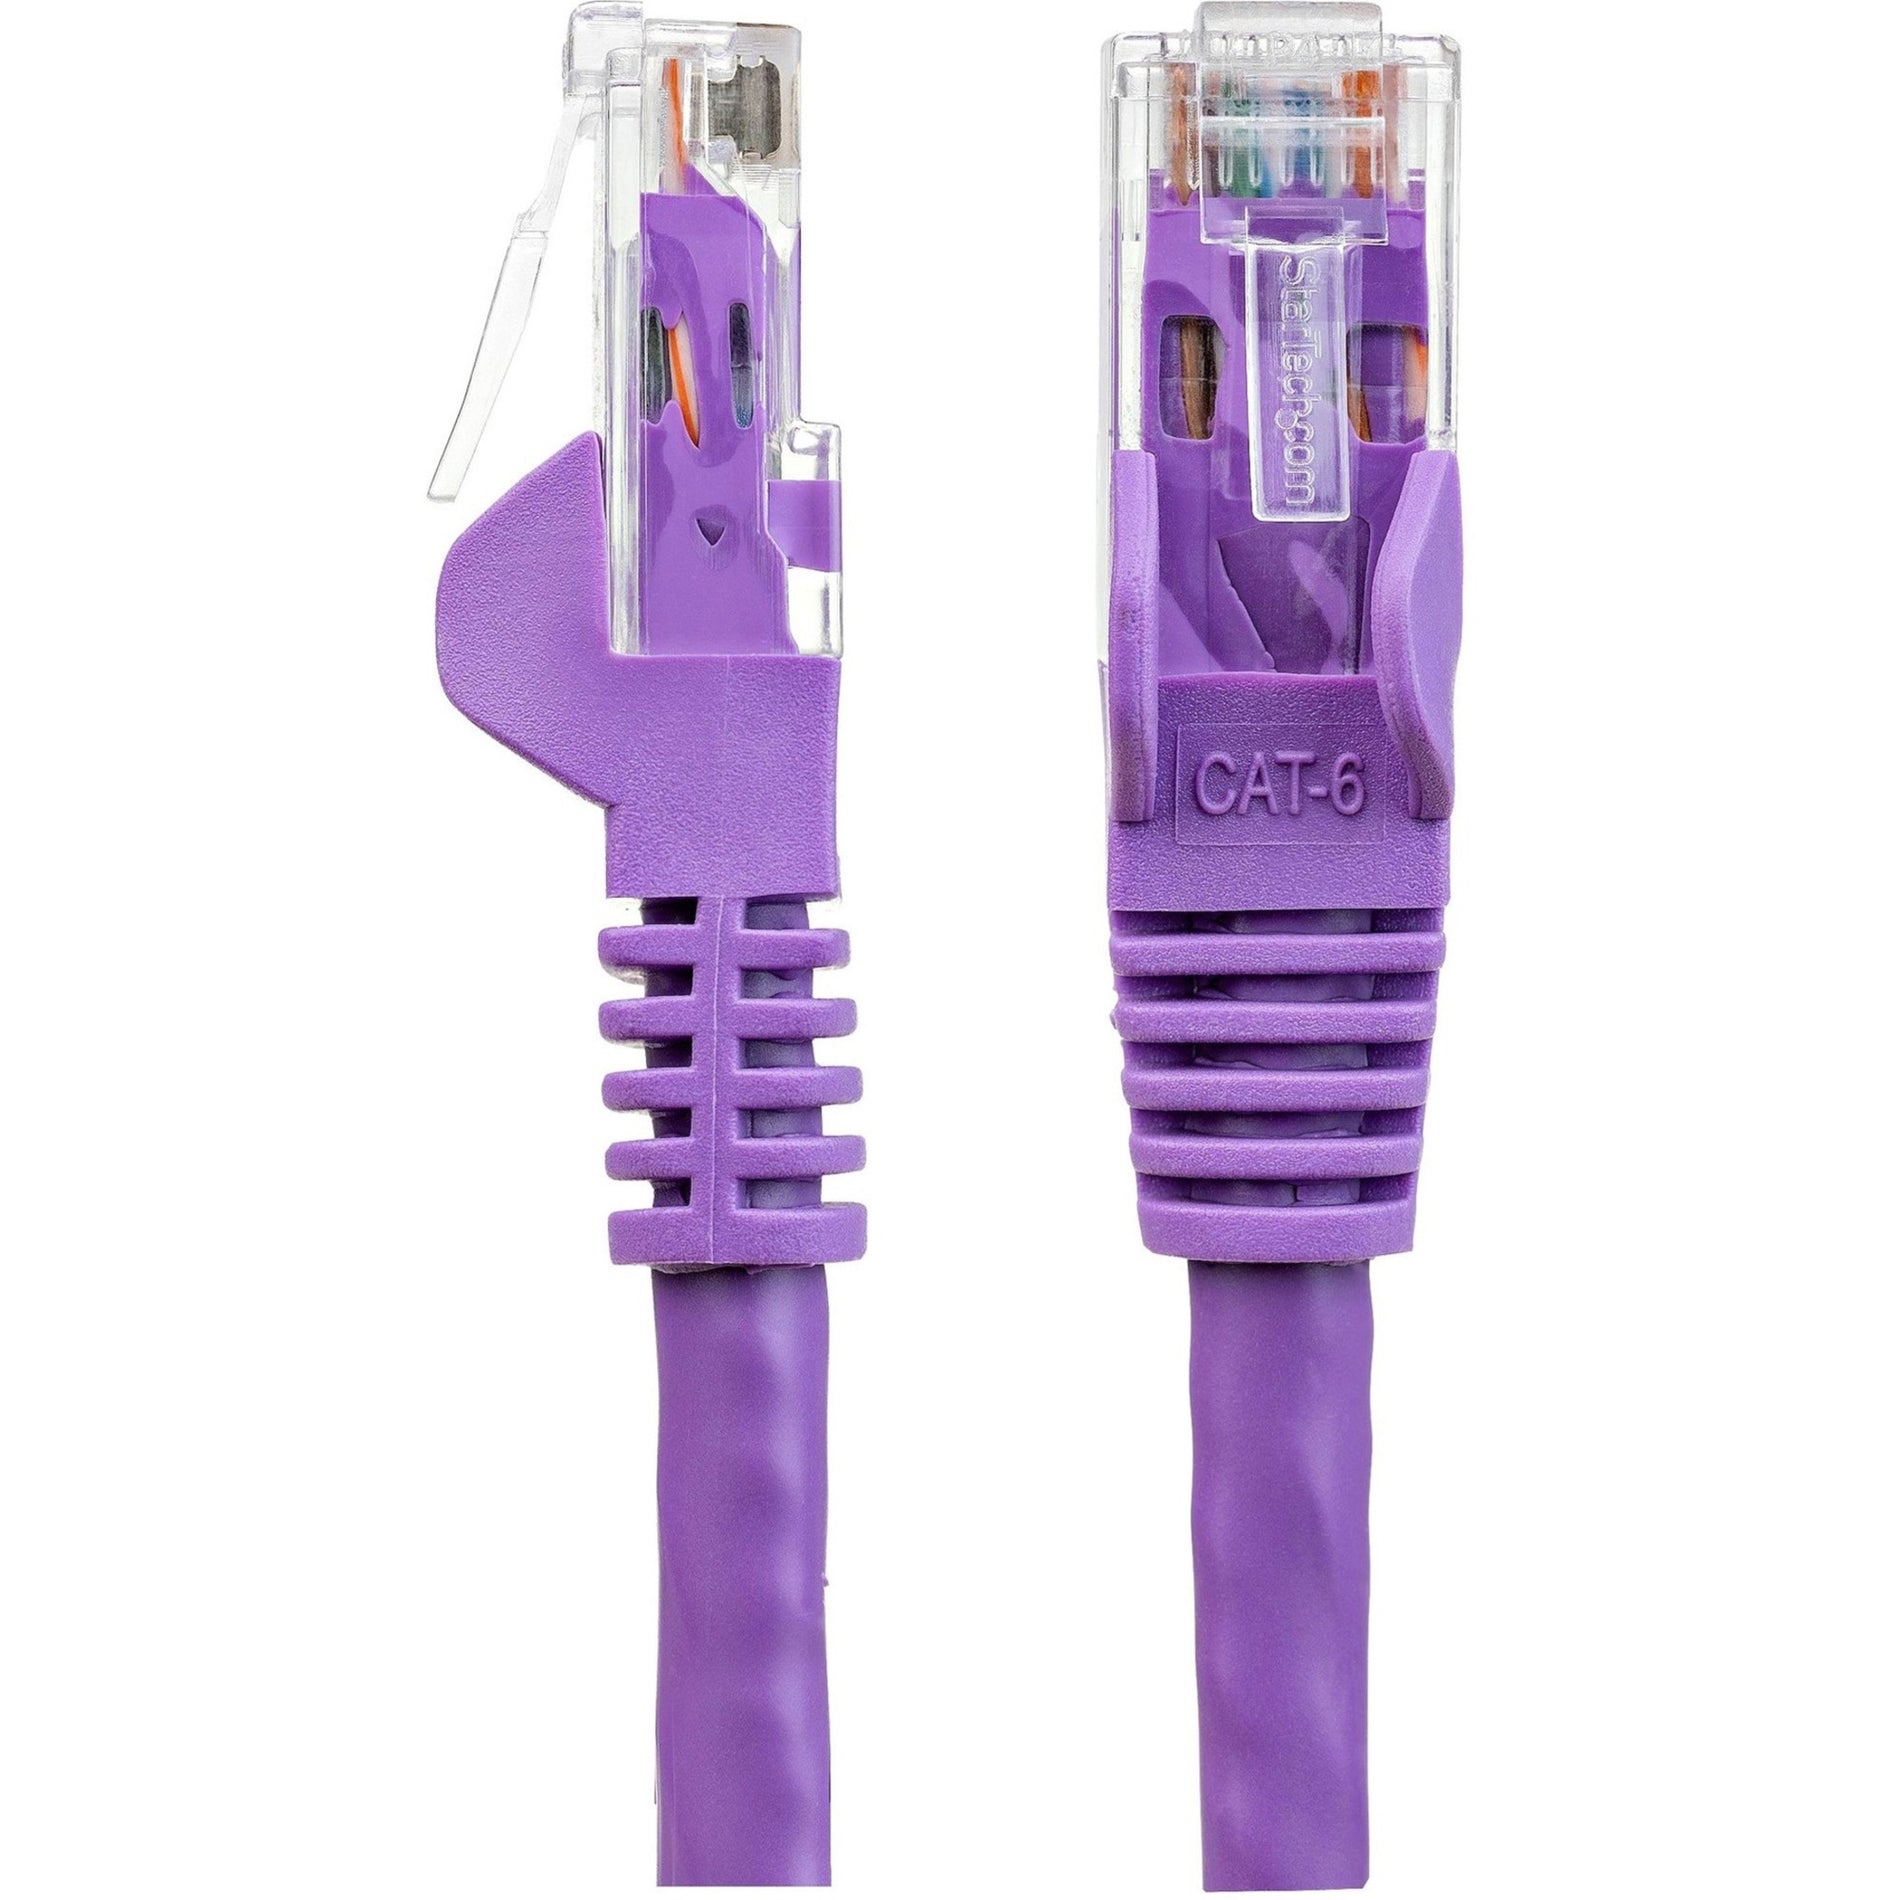 StarTech.com N6PATCH14PL Cat6 Patch Cable, 14ft Purple Ethernet Cable, Snagless RJ45 Connectors